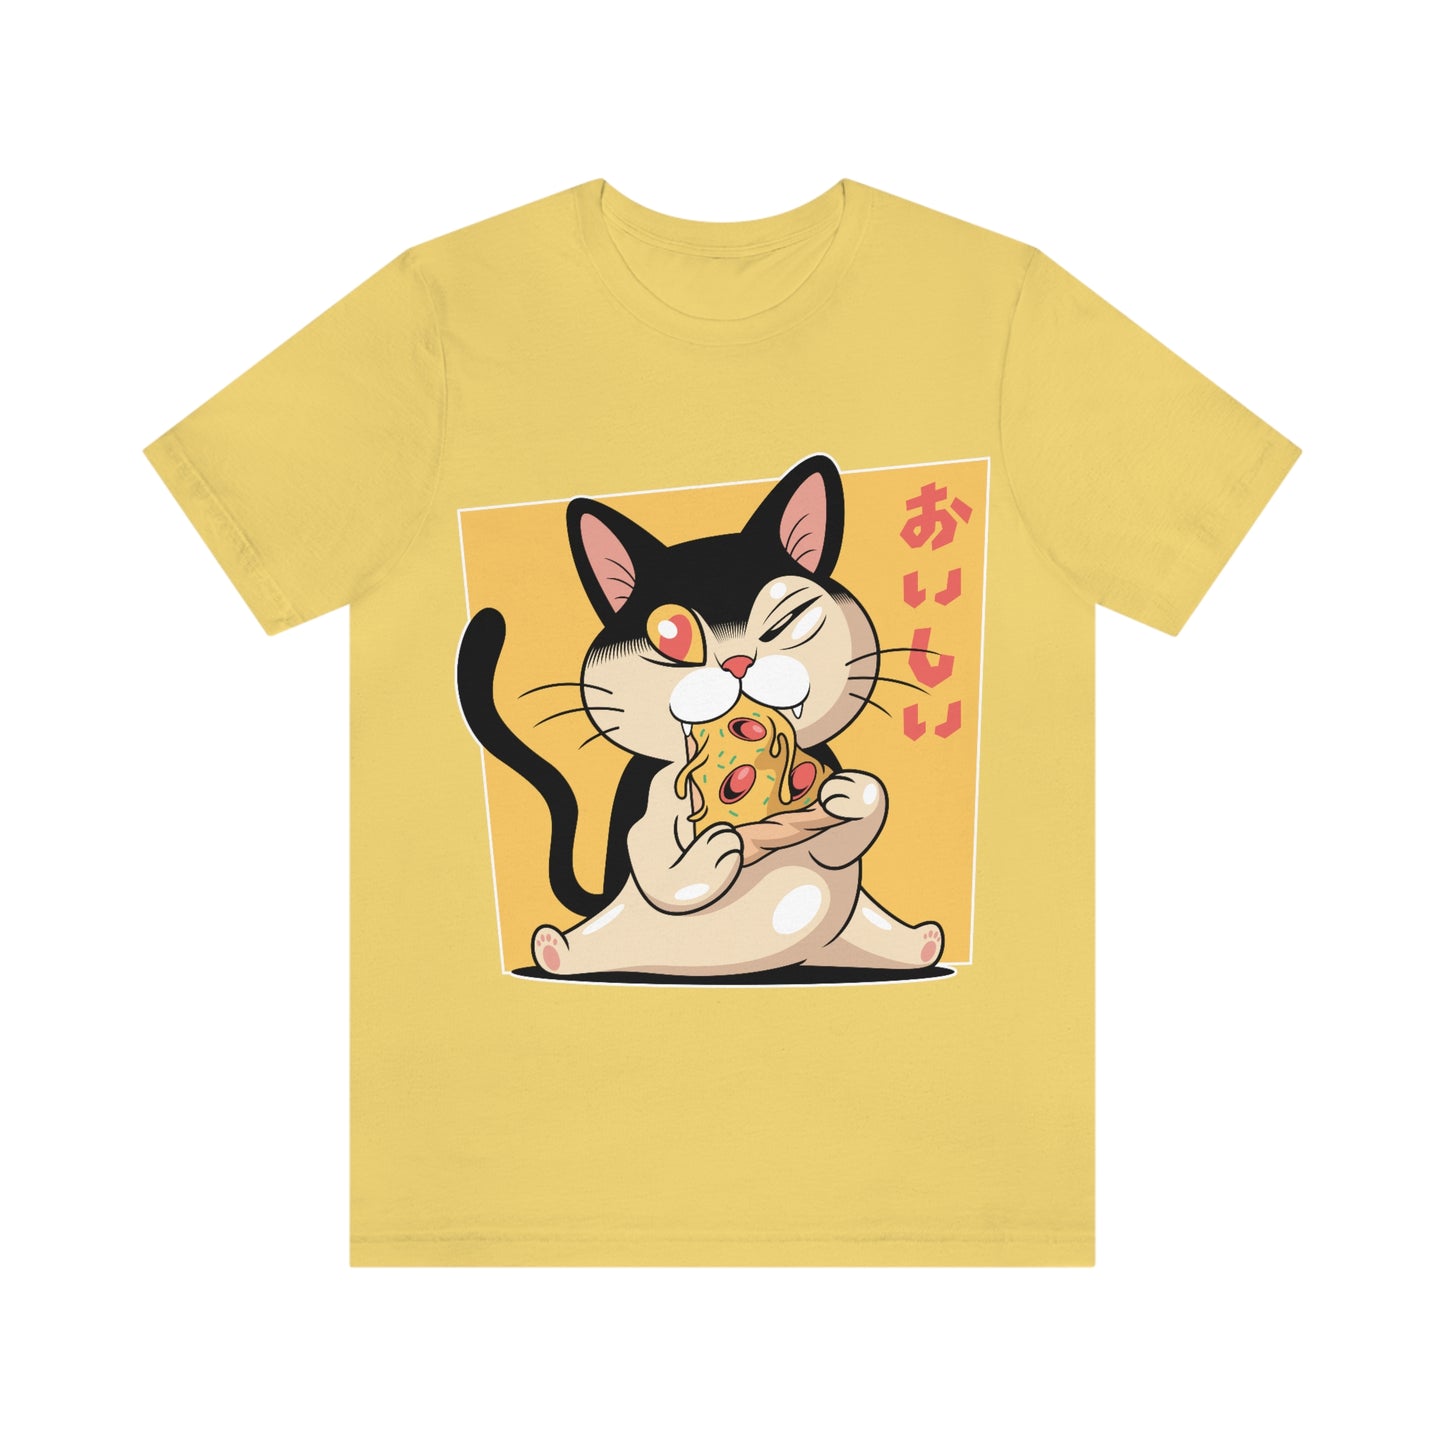 Pizza Cat - Unisex T-Shirt